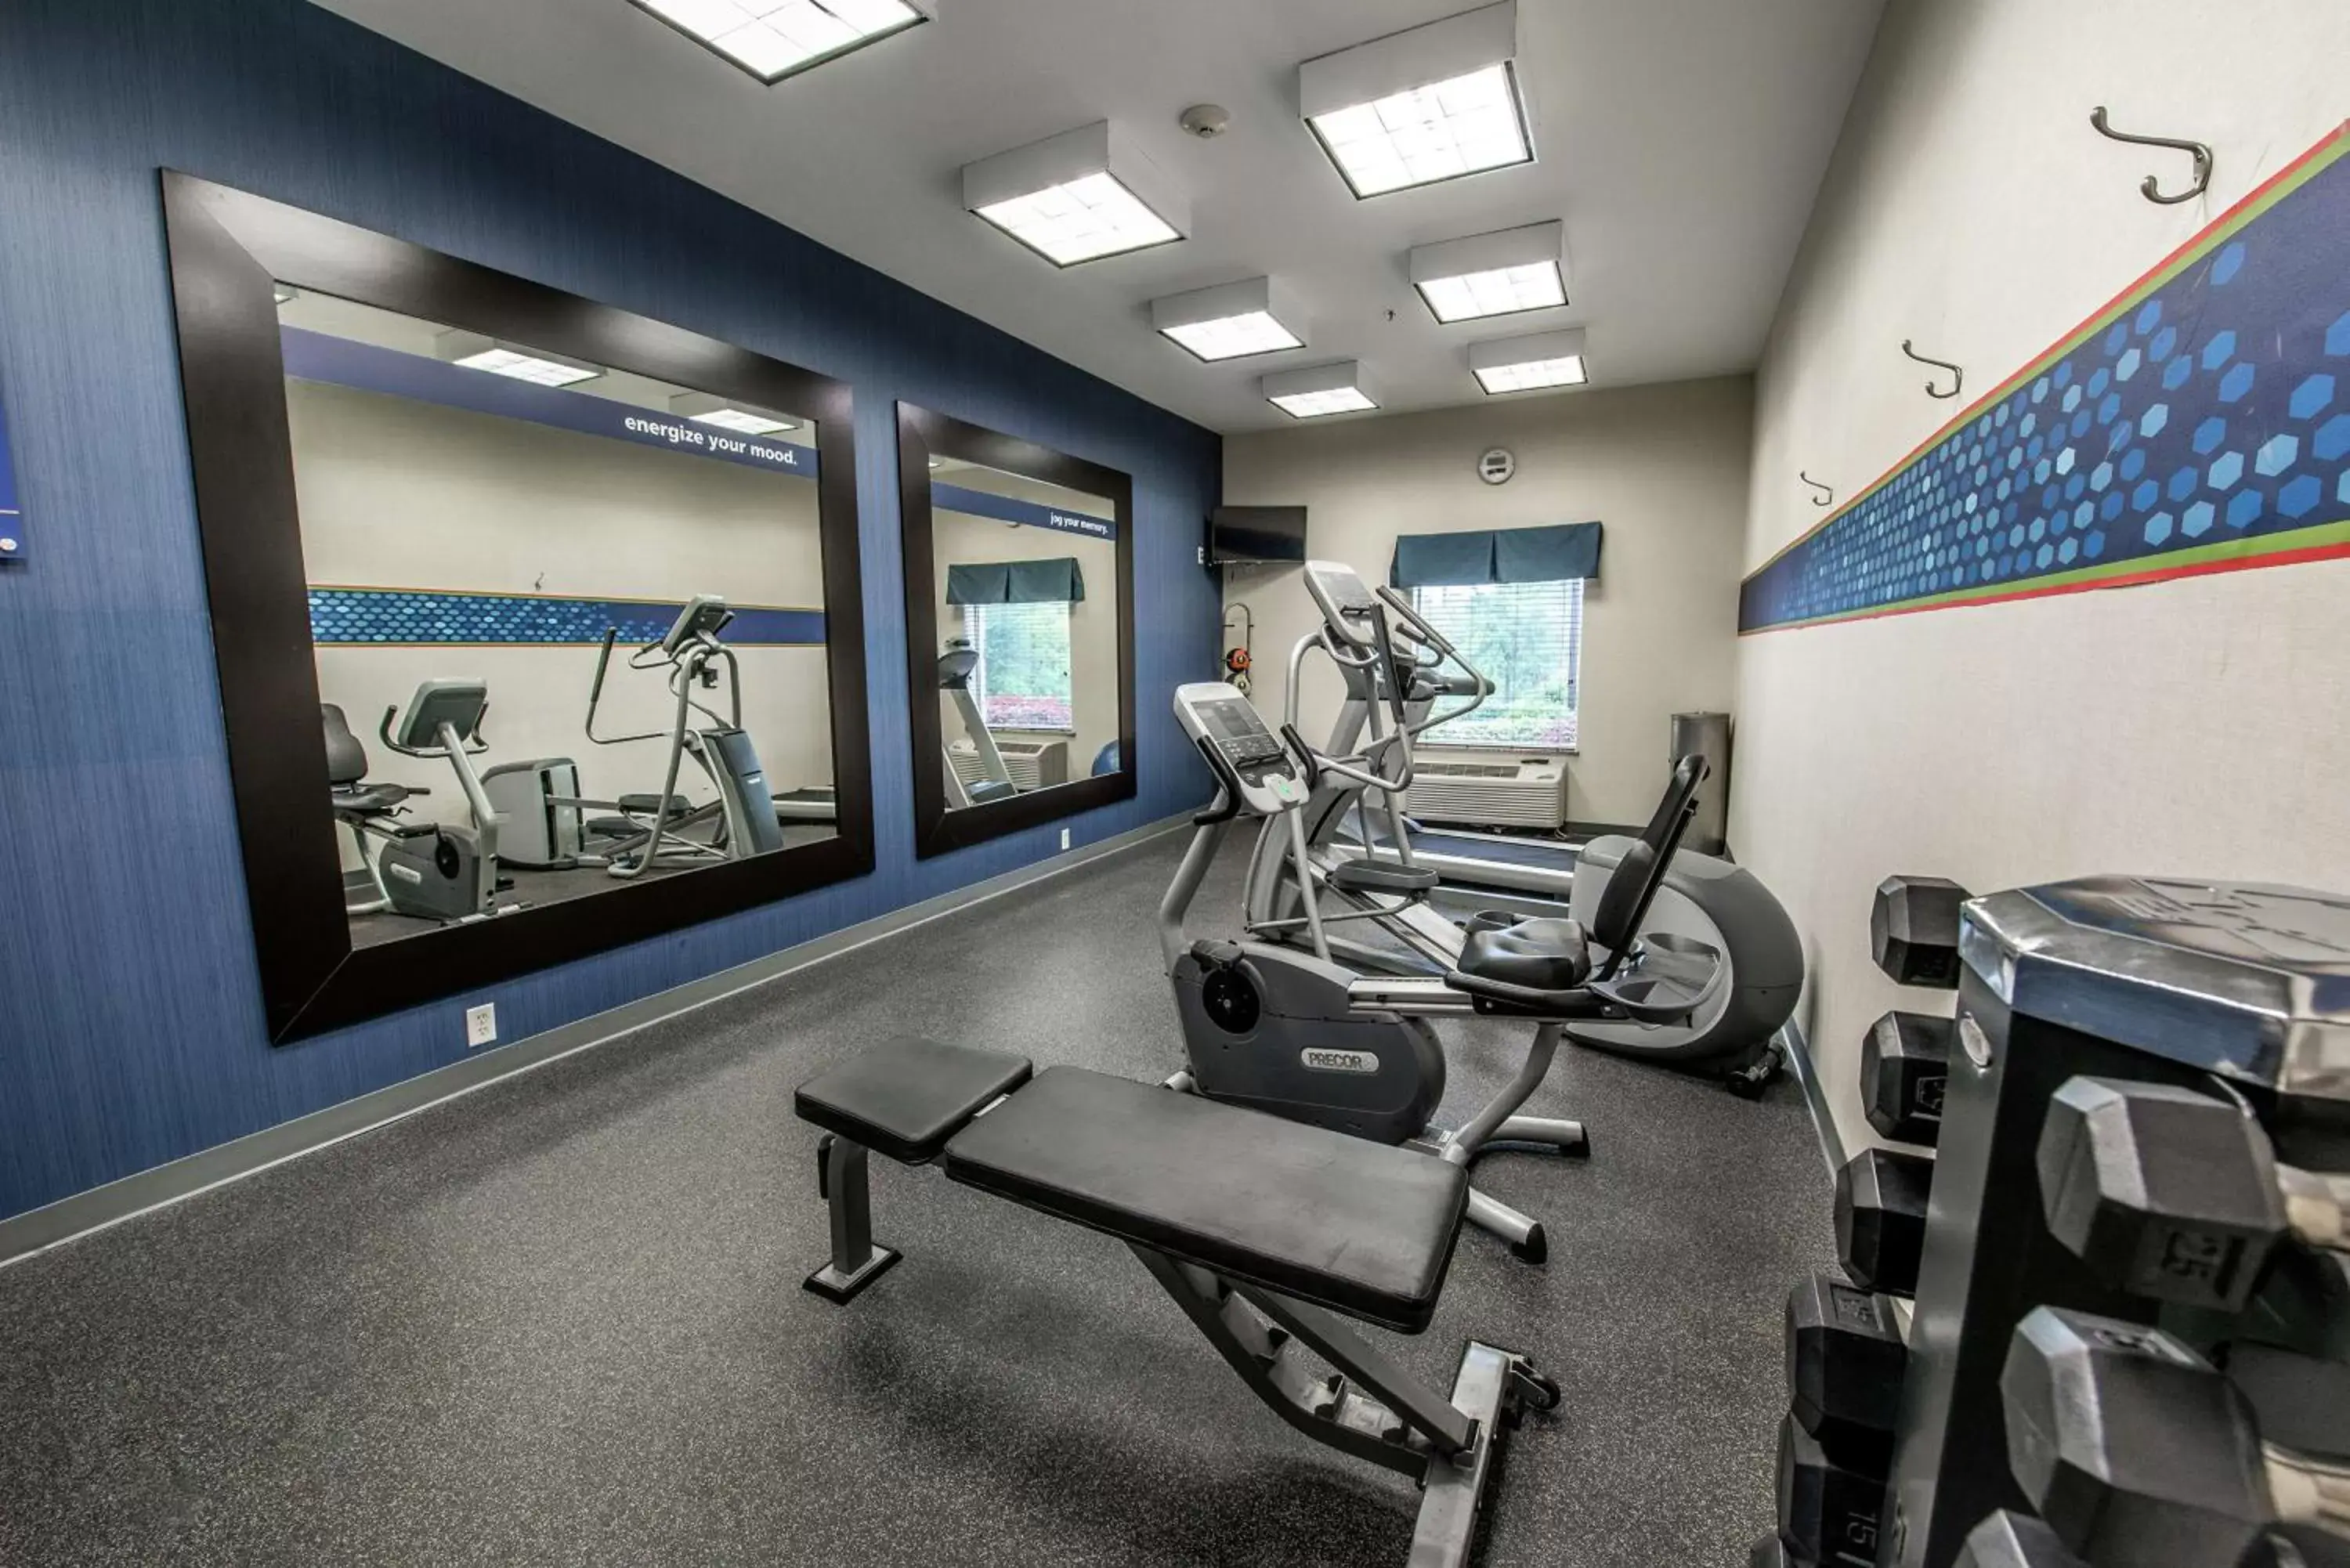 Fitness centre/facilities, Fitness Center/Facilities in Hampton Inn Dallas-Rockwall